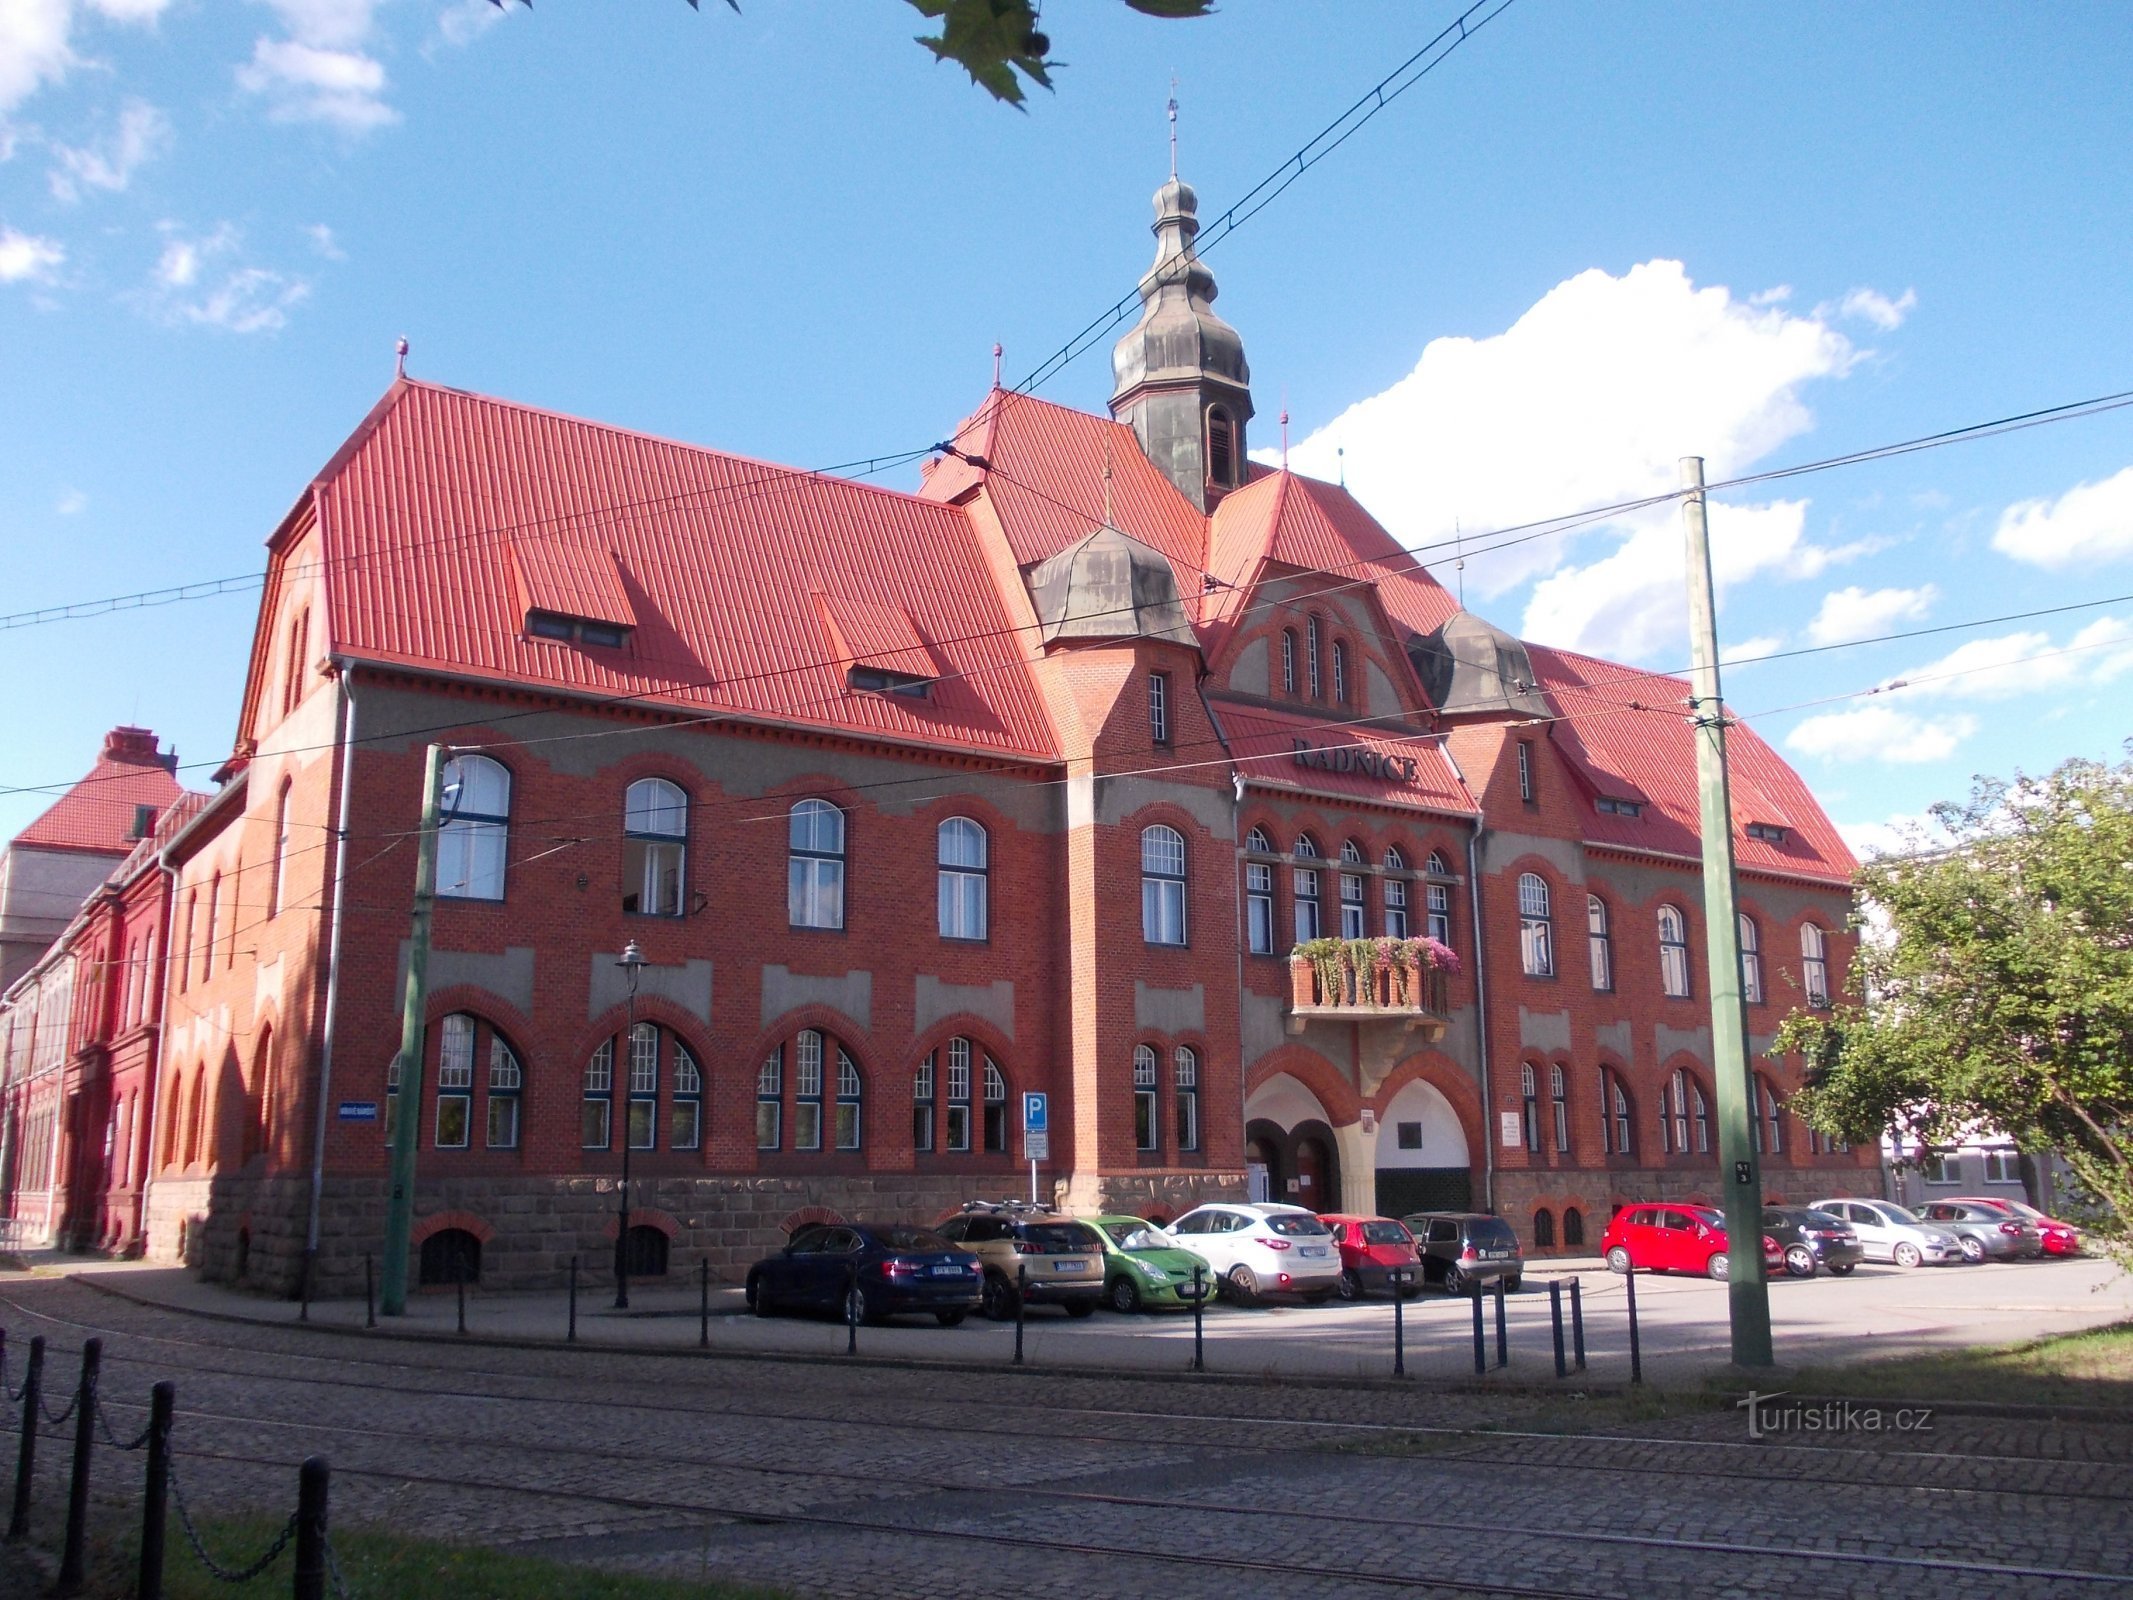 Hôtel de ville de Vítkovice construit en 1901 - 1902